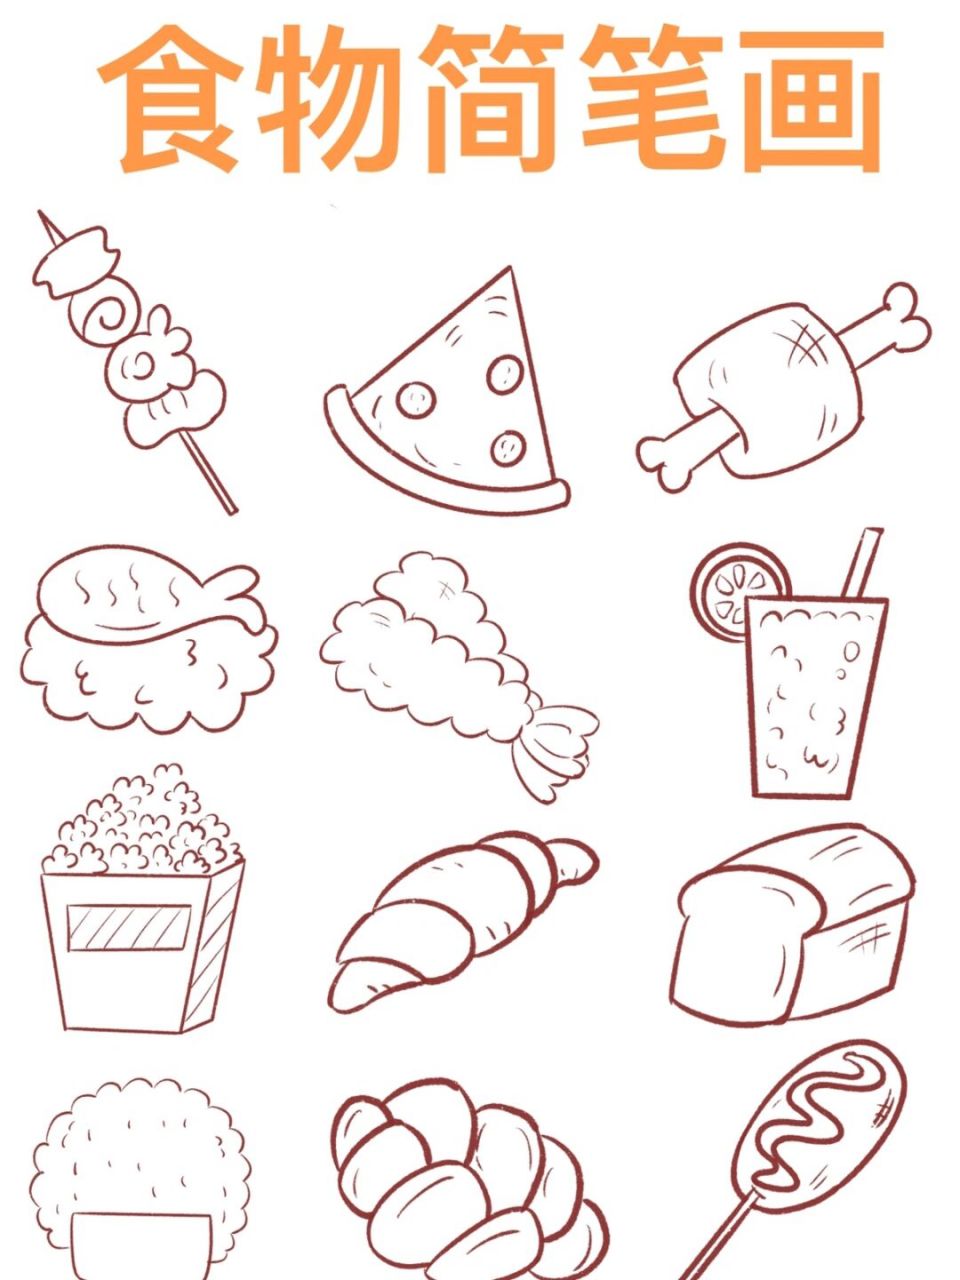 好吃的简笔画简单食物图片